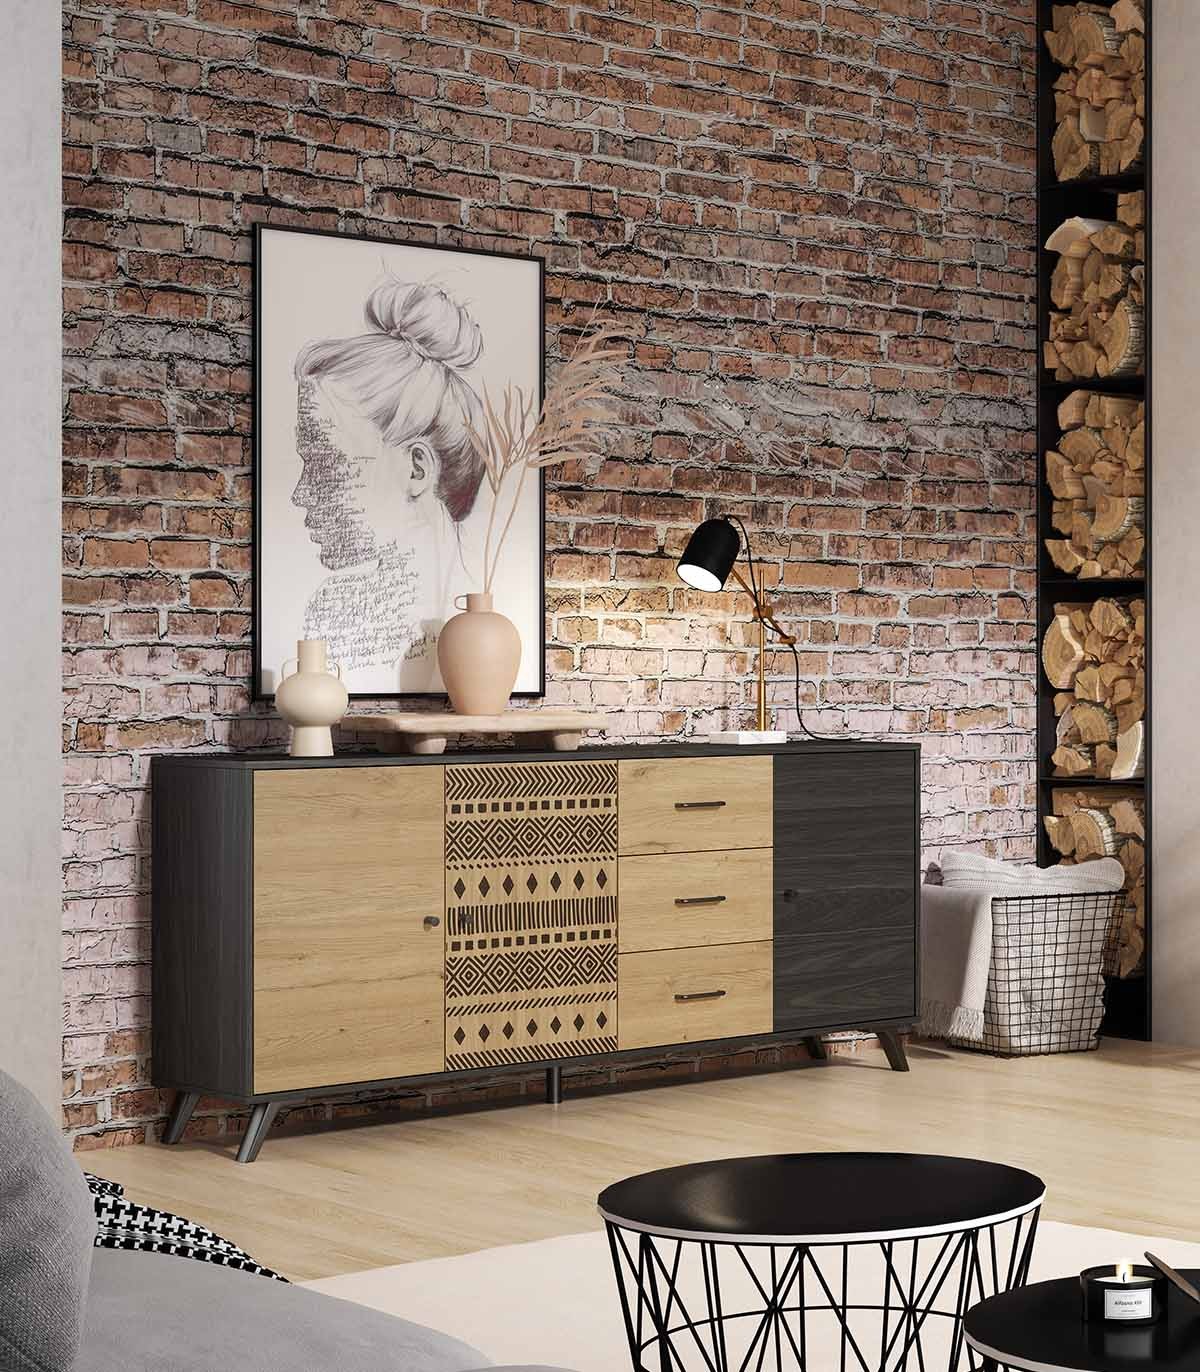 https://www.decoracionbeltran.com/59592-superlarge_default/mueble-aparador-en-madera-de-estilo-etnico-africa.jpg